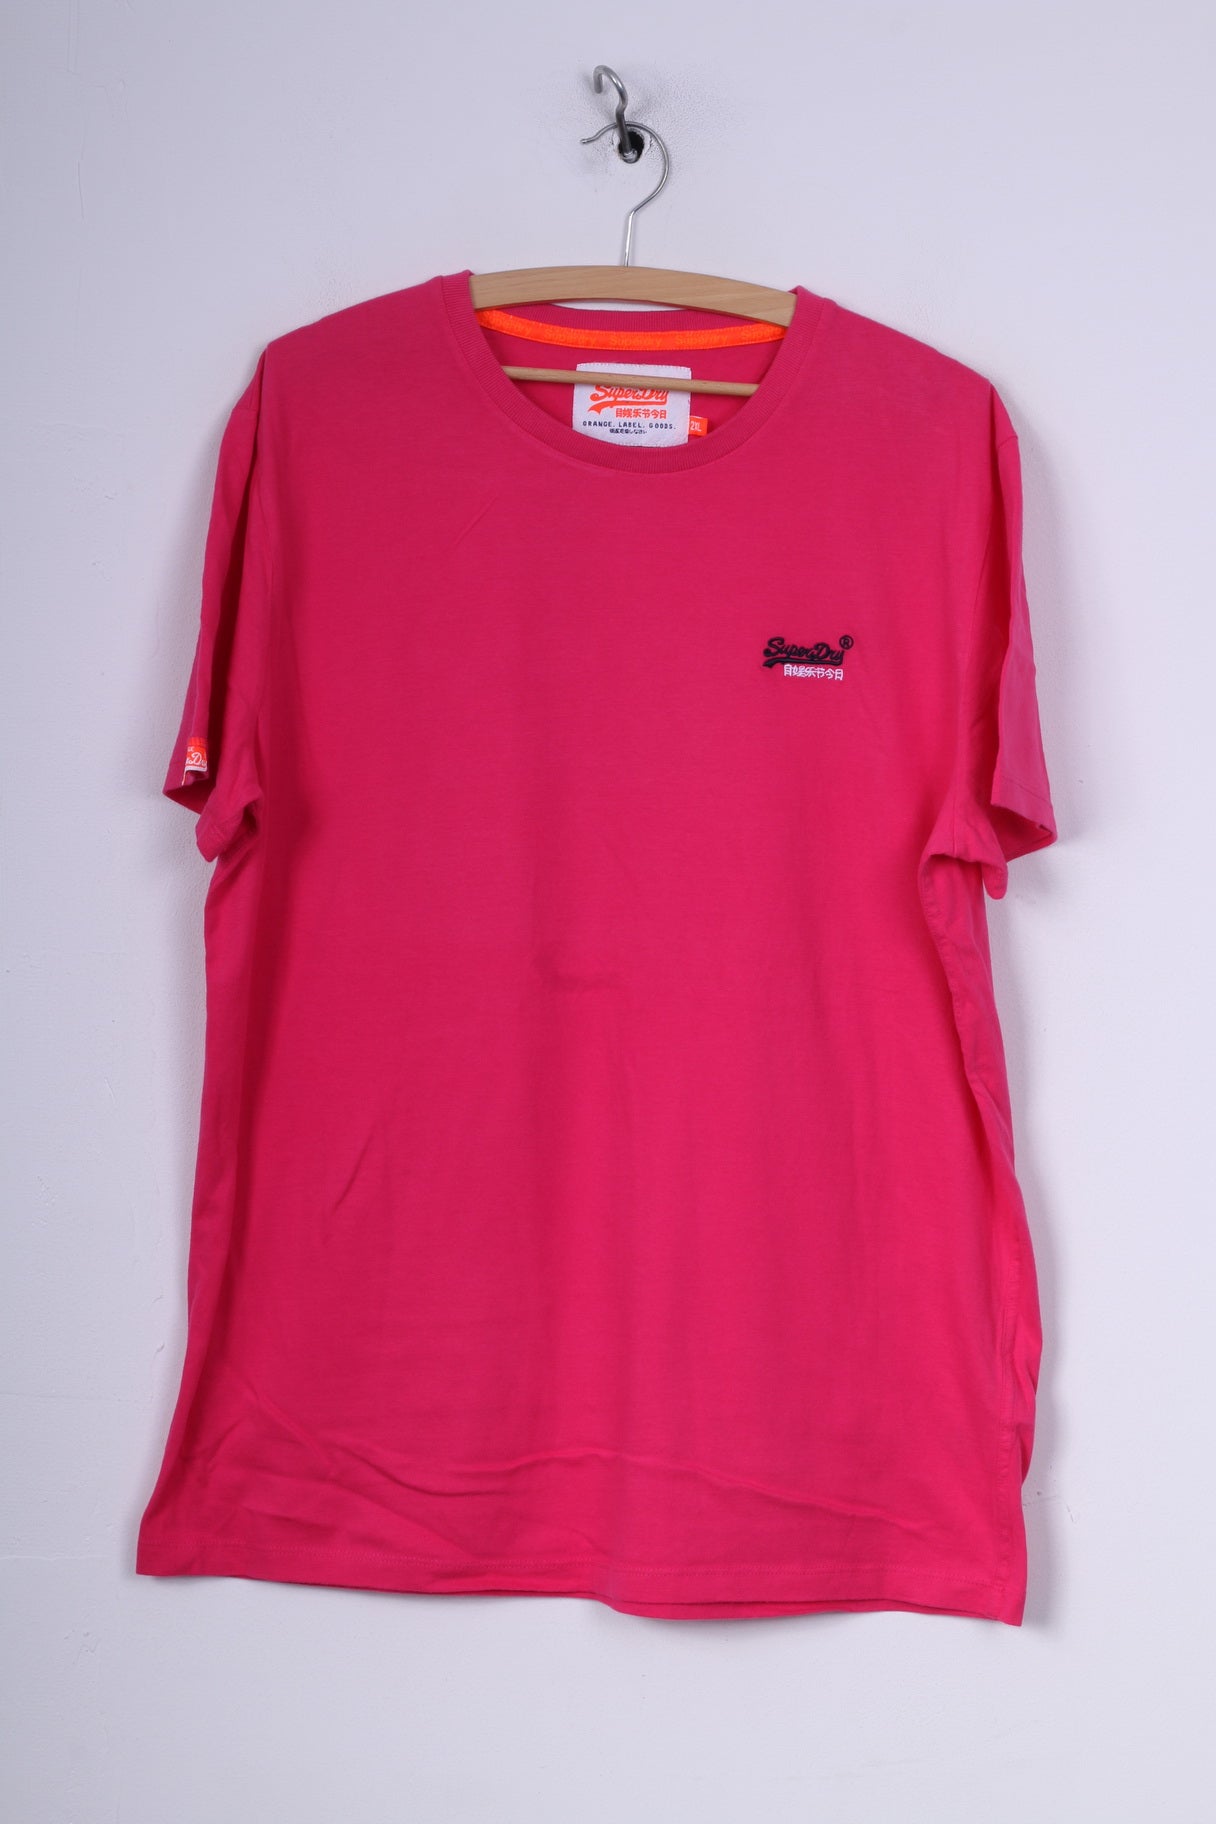 T-shirt da uomo Superdry 2XL (XL) in cotone rosa con etichetta arancione e logo 